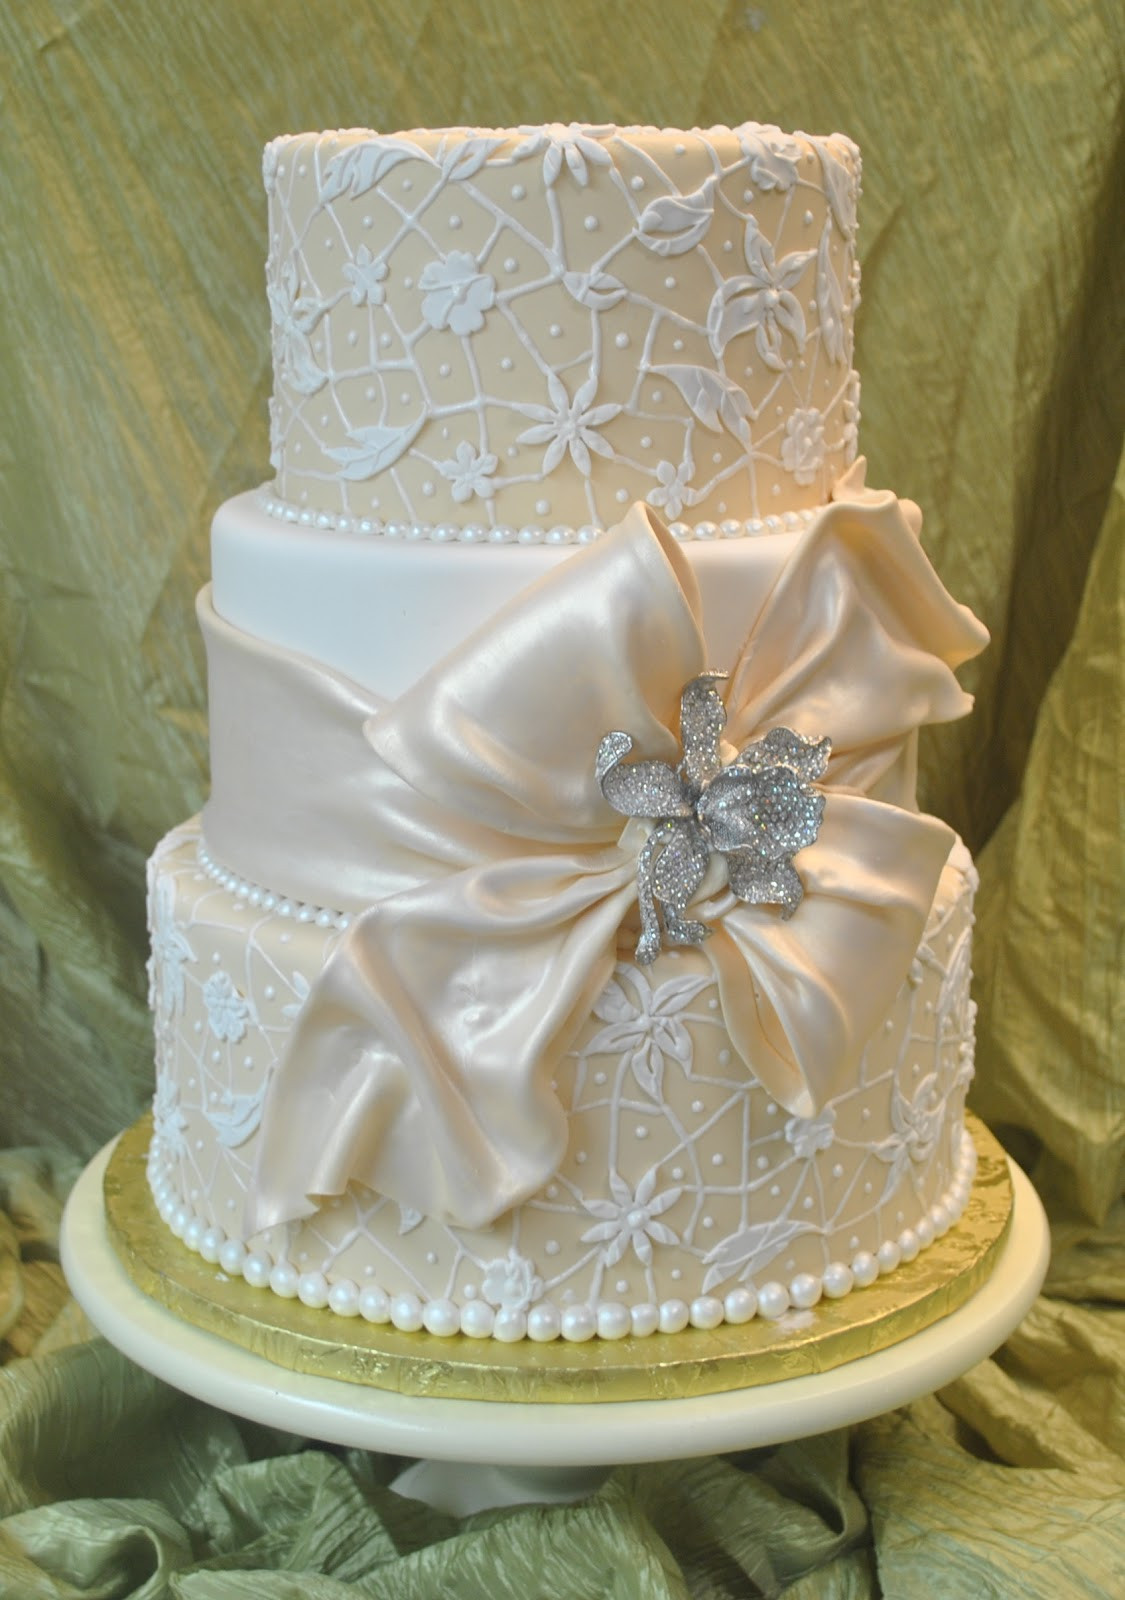 Ivory Wedding Cakes
 The Cake Zone Theme Wedding Cake Ideas for 2012